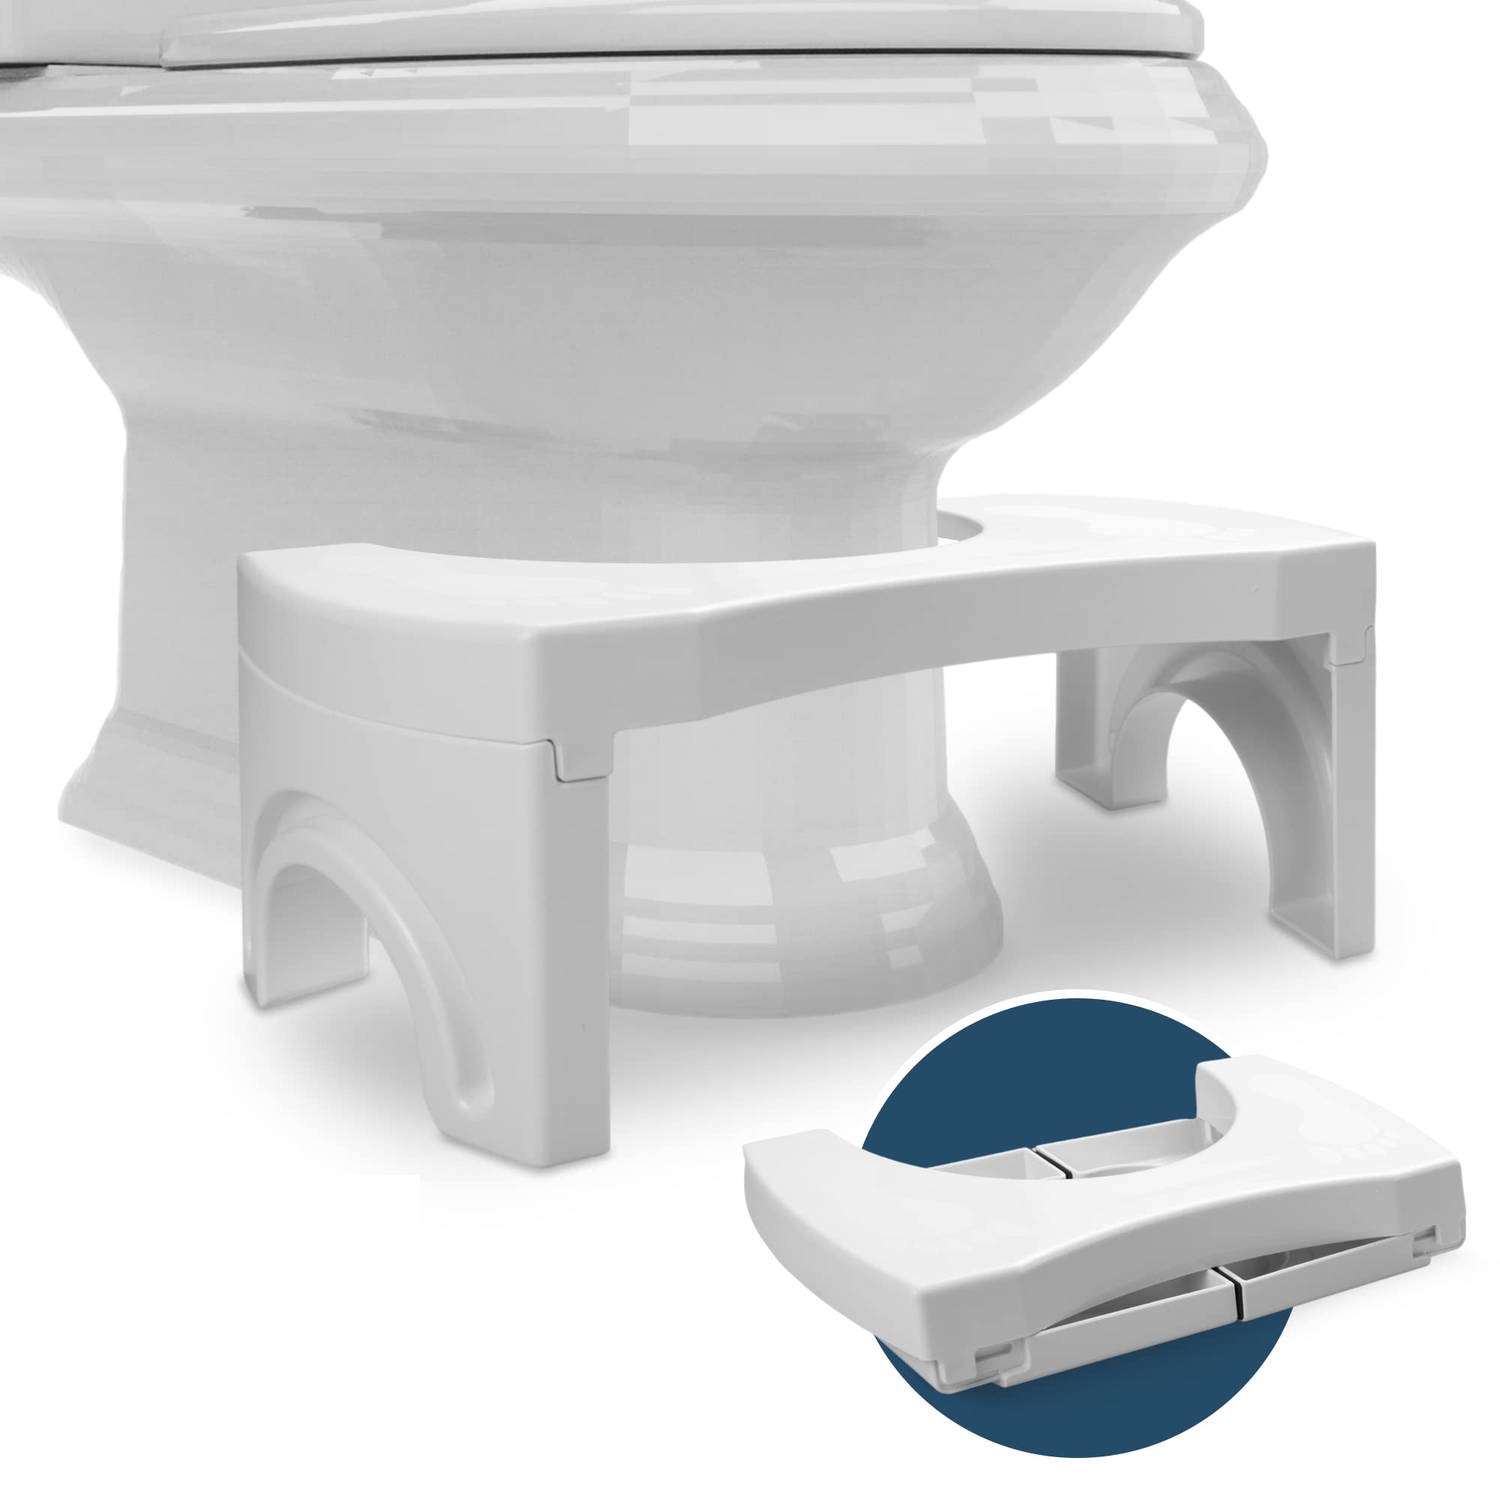 WC Krukje Opvouwbaar WC Opstapje Inklapbaar Volwassen en Kinderen Potty Training Toiletkrukje Juiste